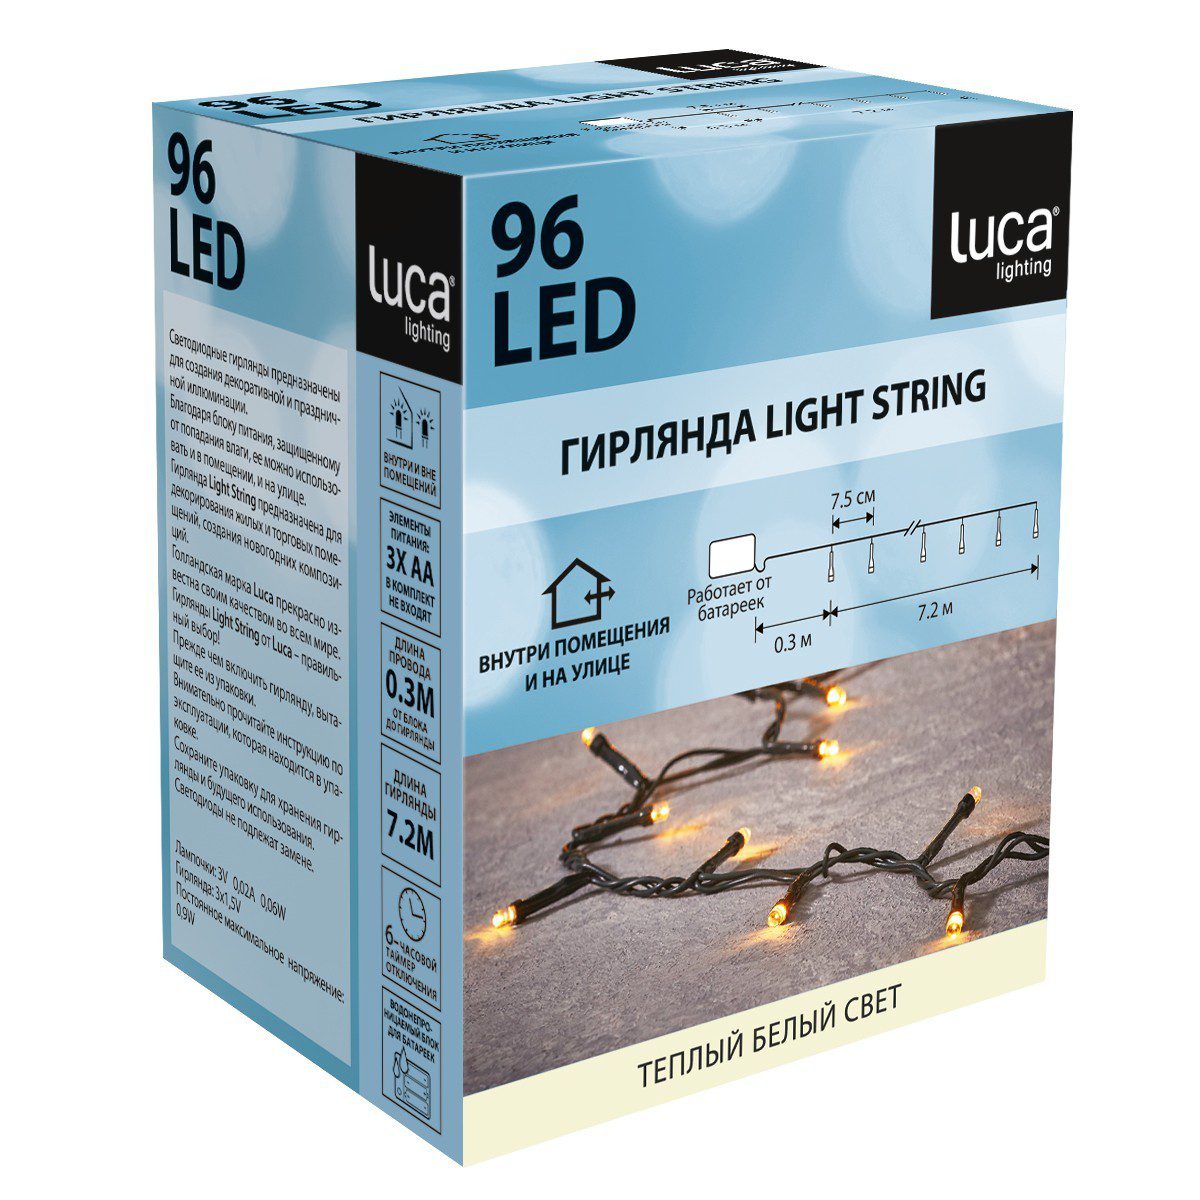 Гирлянда на батарейках Luca Lighting теплый белый свет с таймером отключения 6 часов (96 ламп, длина гирлянды 720 см)